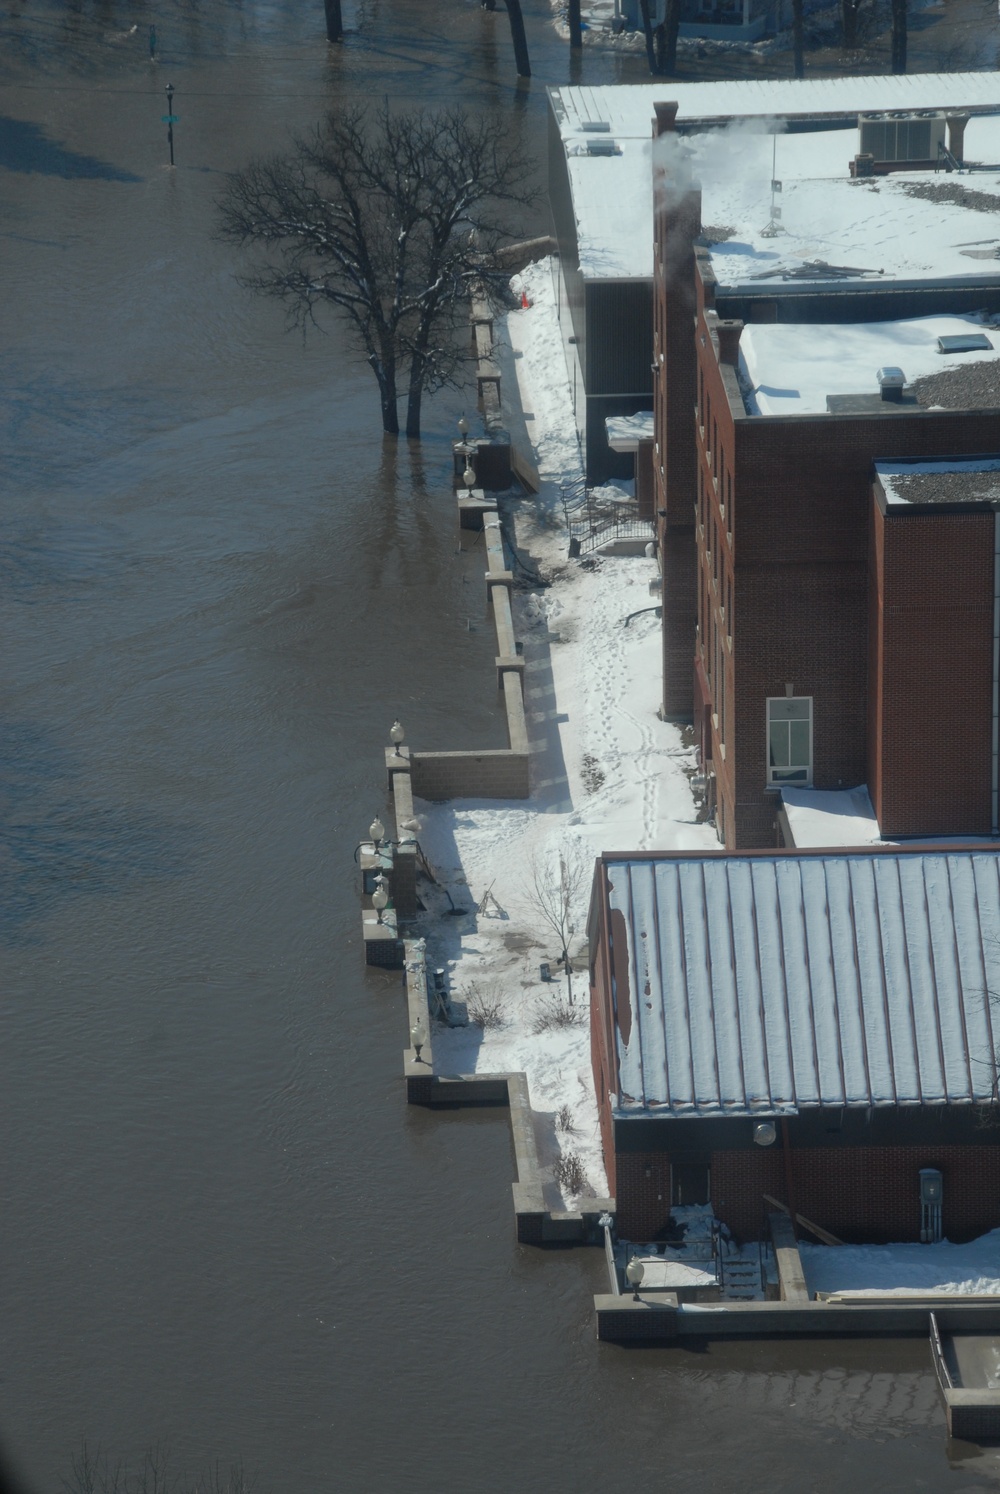 DVIDS Images North Dakota flood [Image 2 of 18]